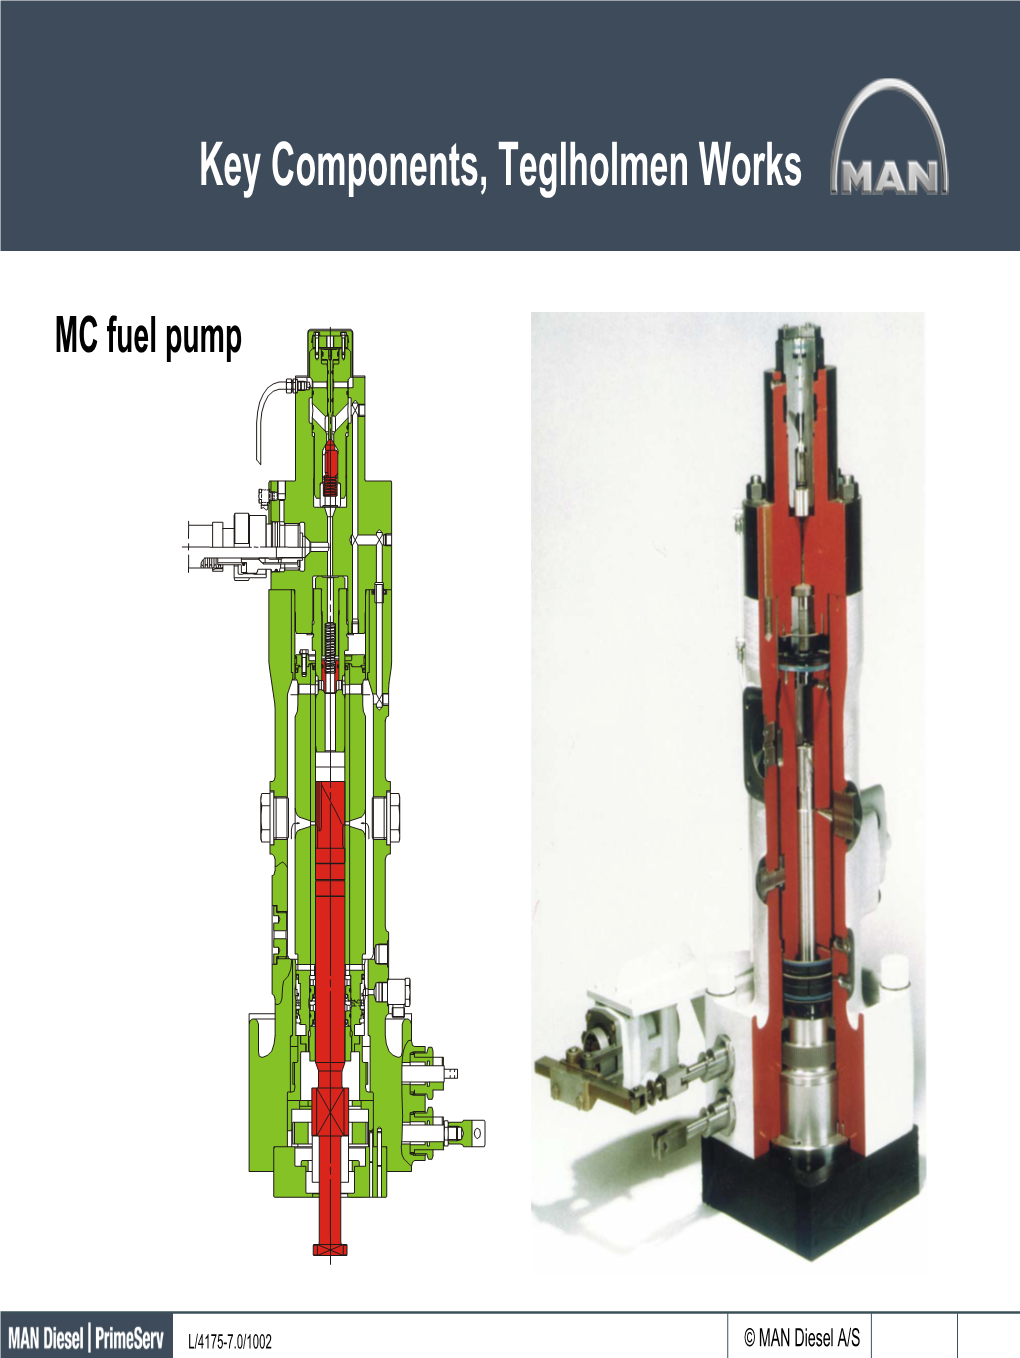 MC Fuel Pump